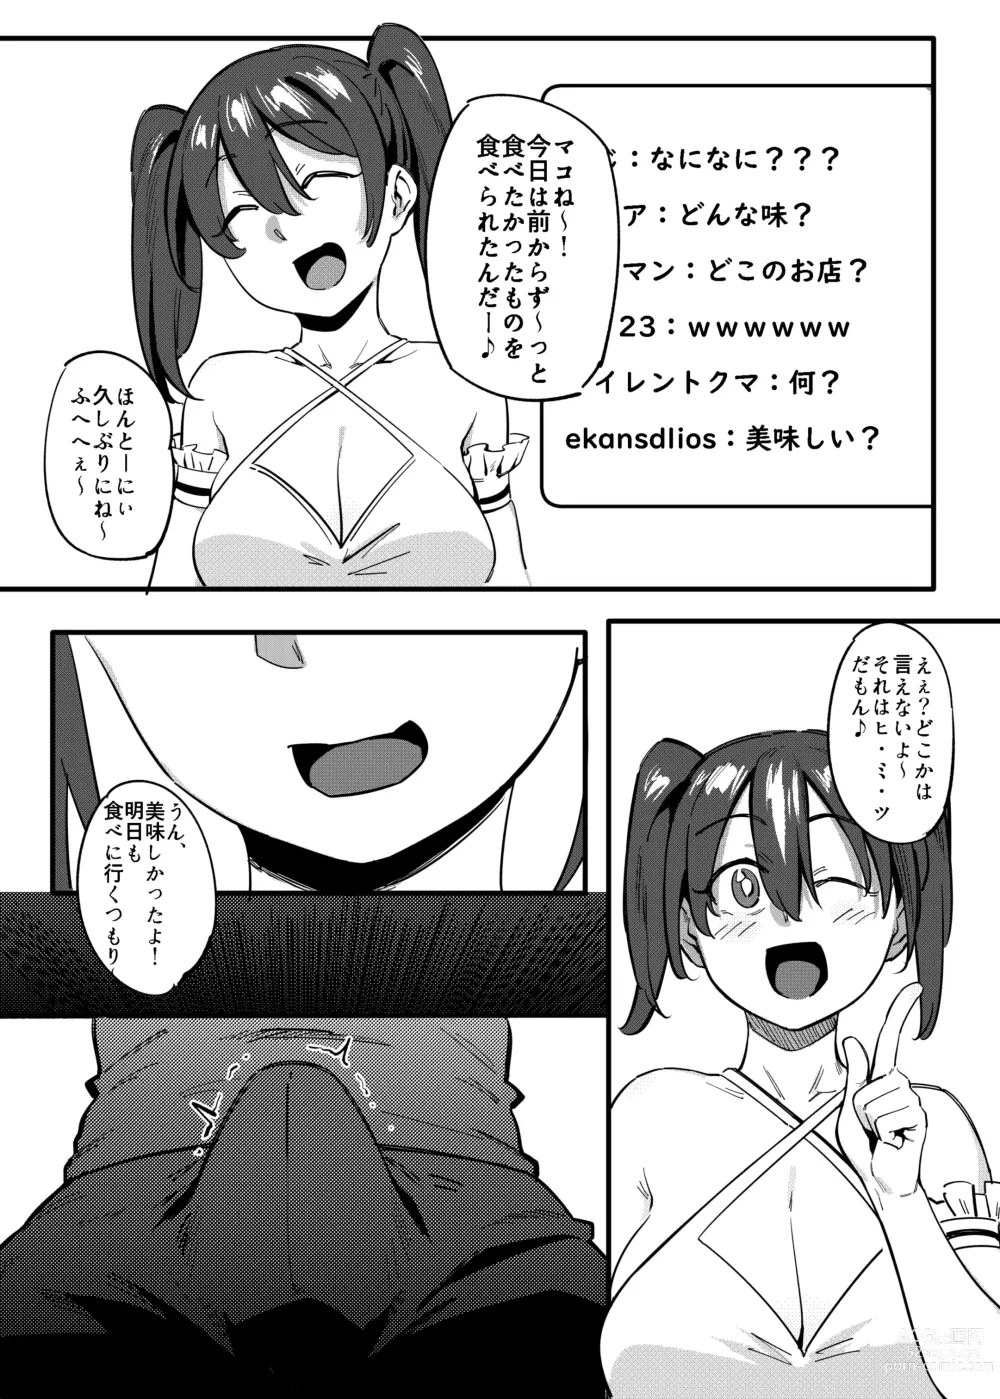 Page 19 of doujinshi Tonari no Haruka-san